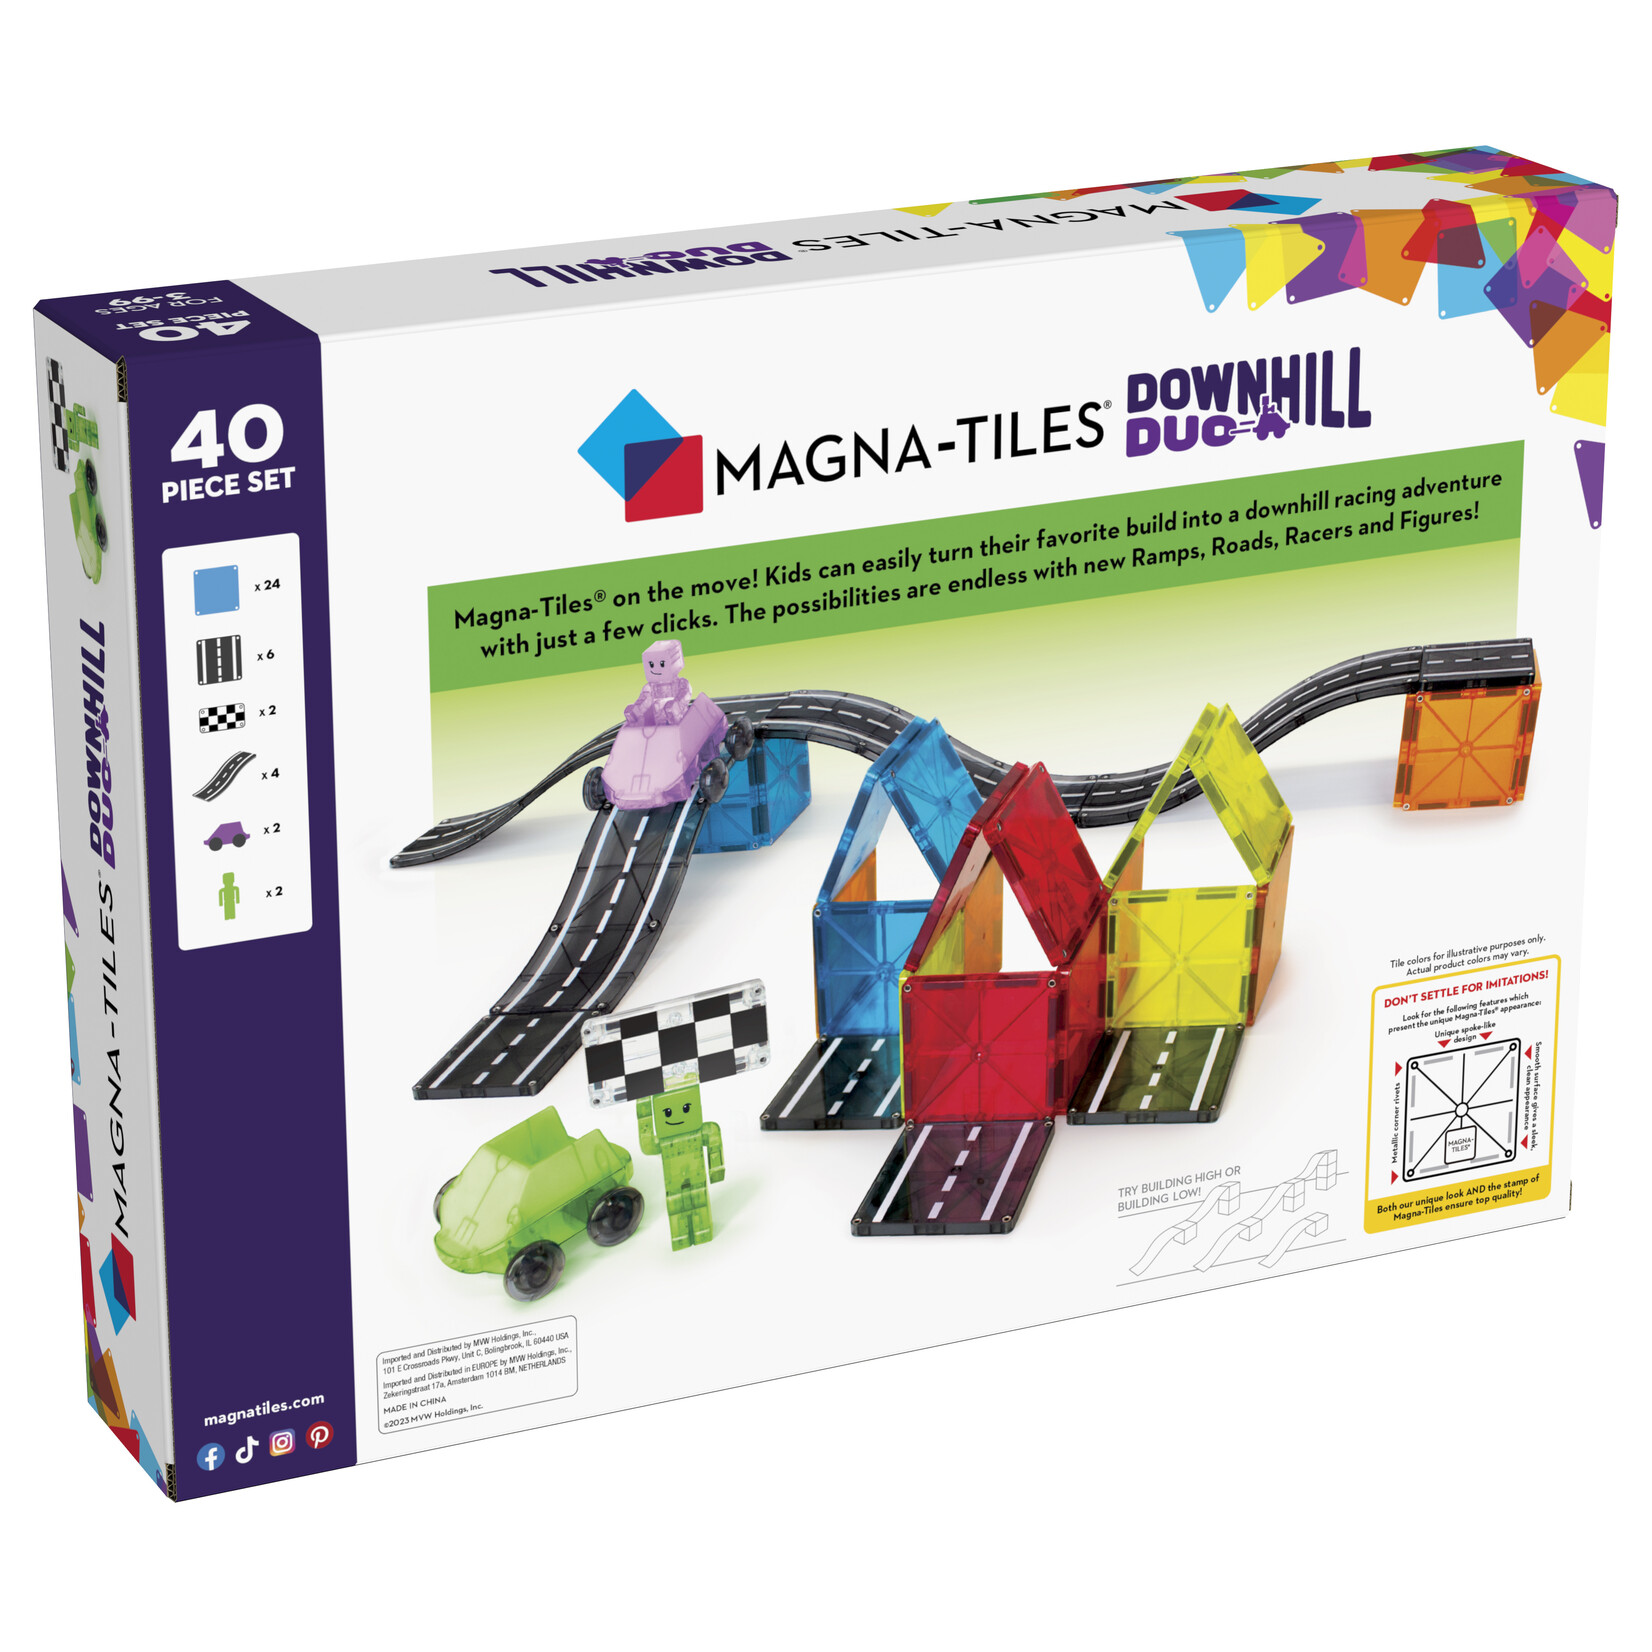 Magna-Tiles Downhill Duo 40-delige magnetische constructieset, het originele merk voor magnetisch speelgoed